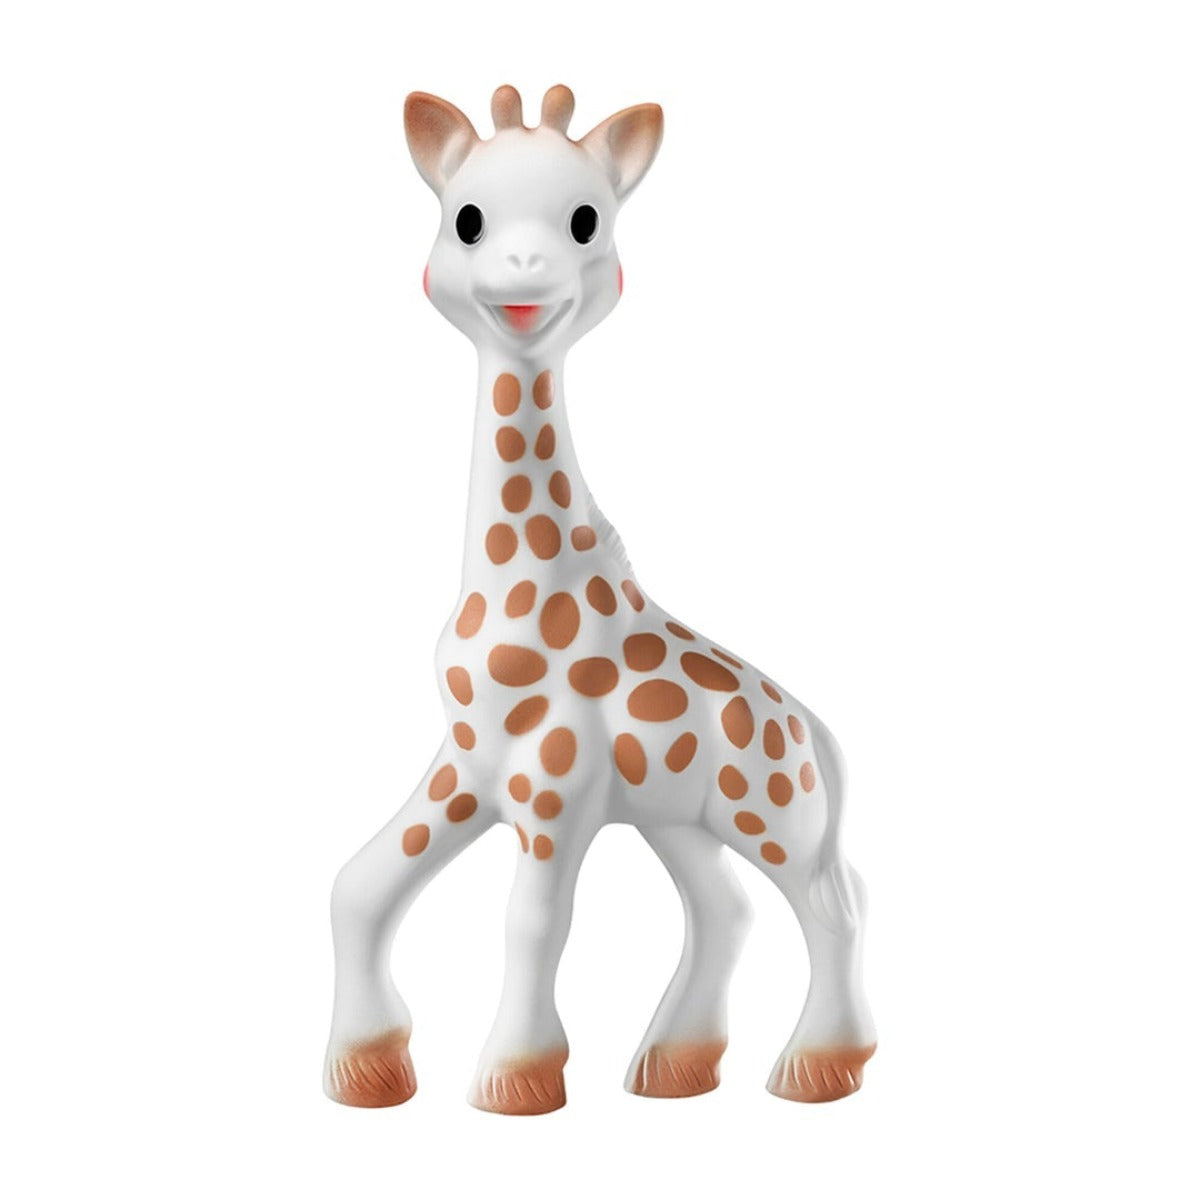 Sophie la Girafe Toy